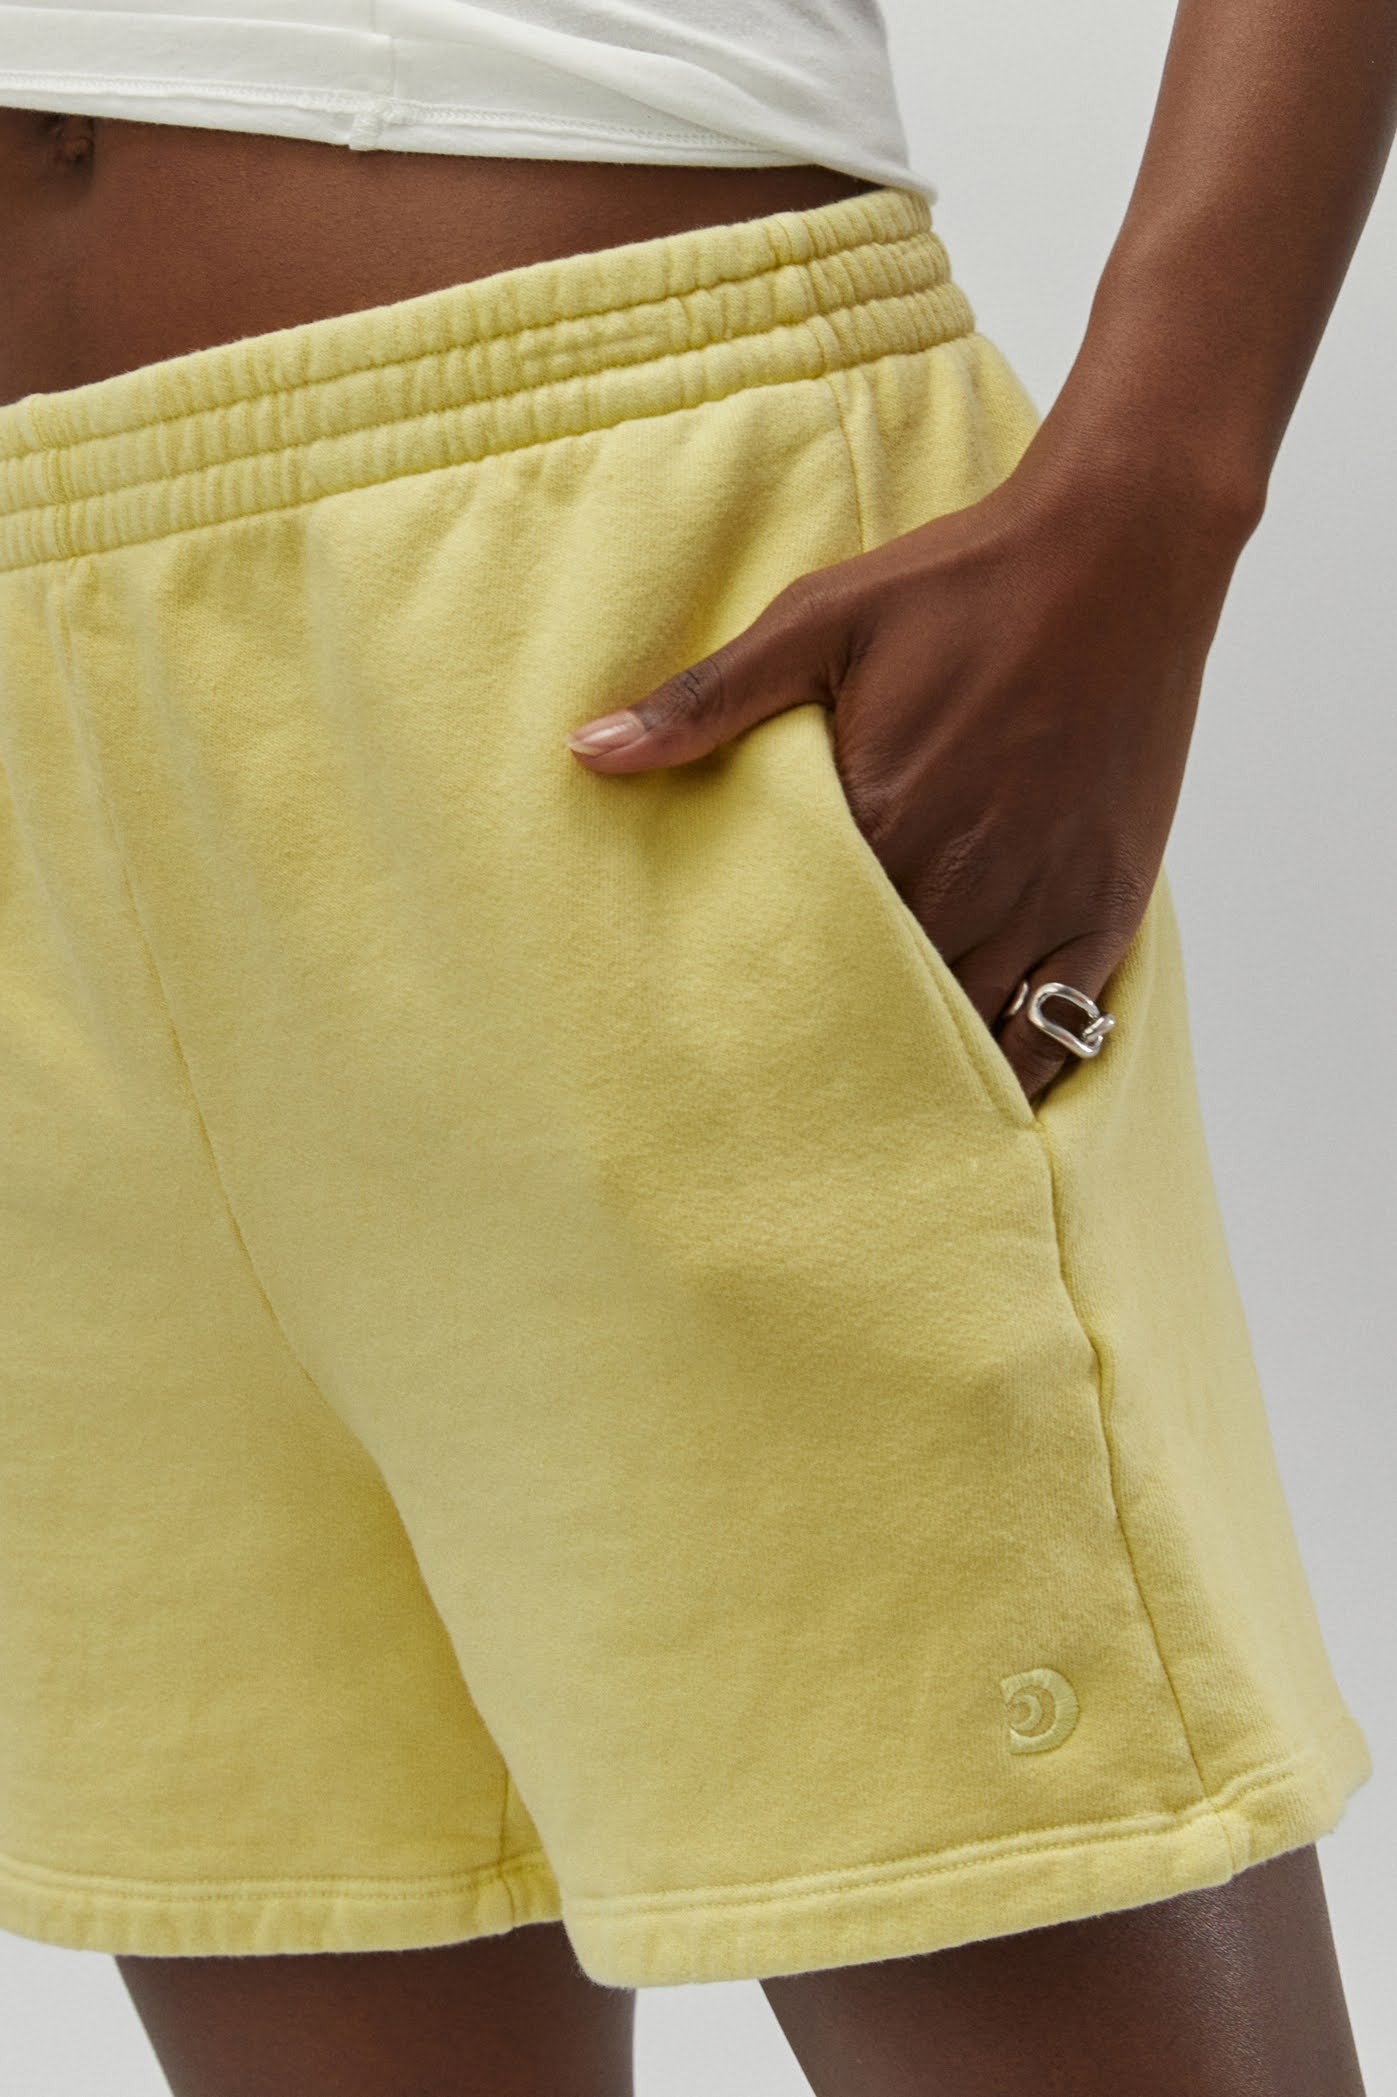 yellow shorts pocket